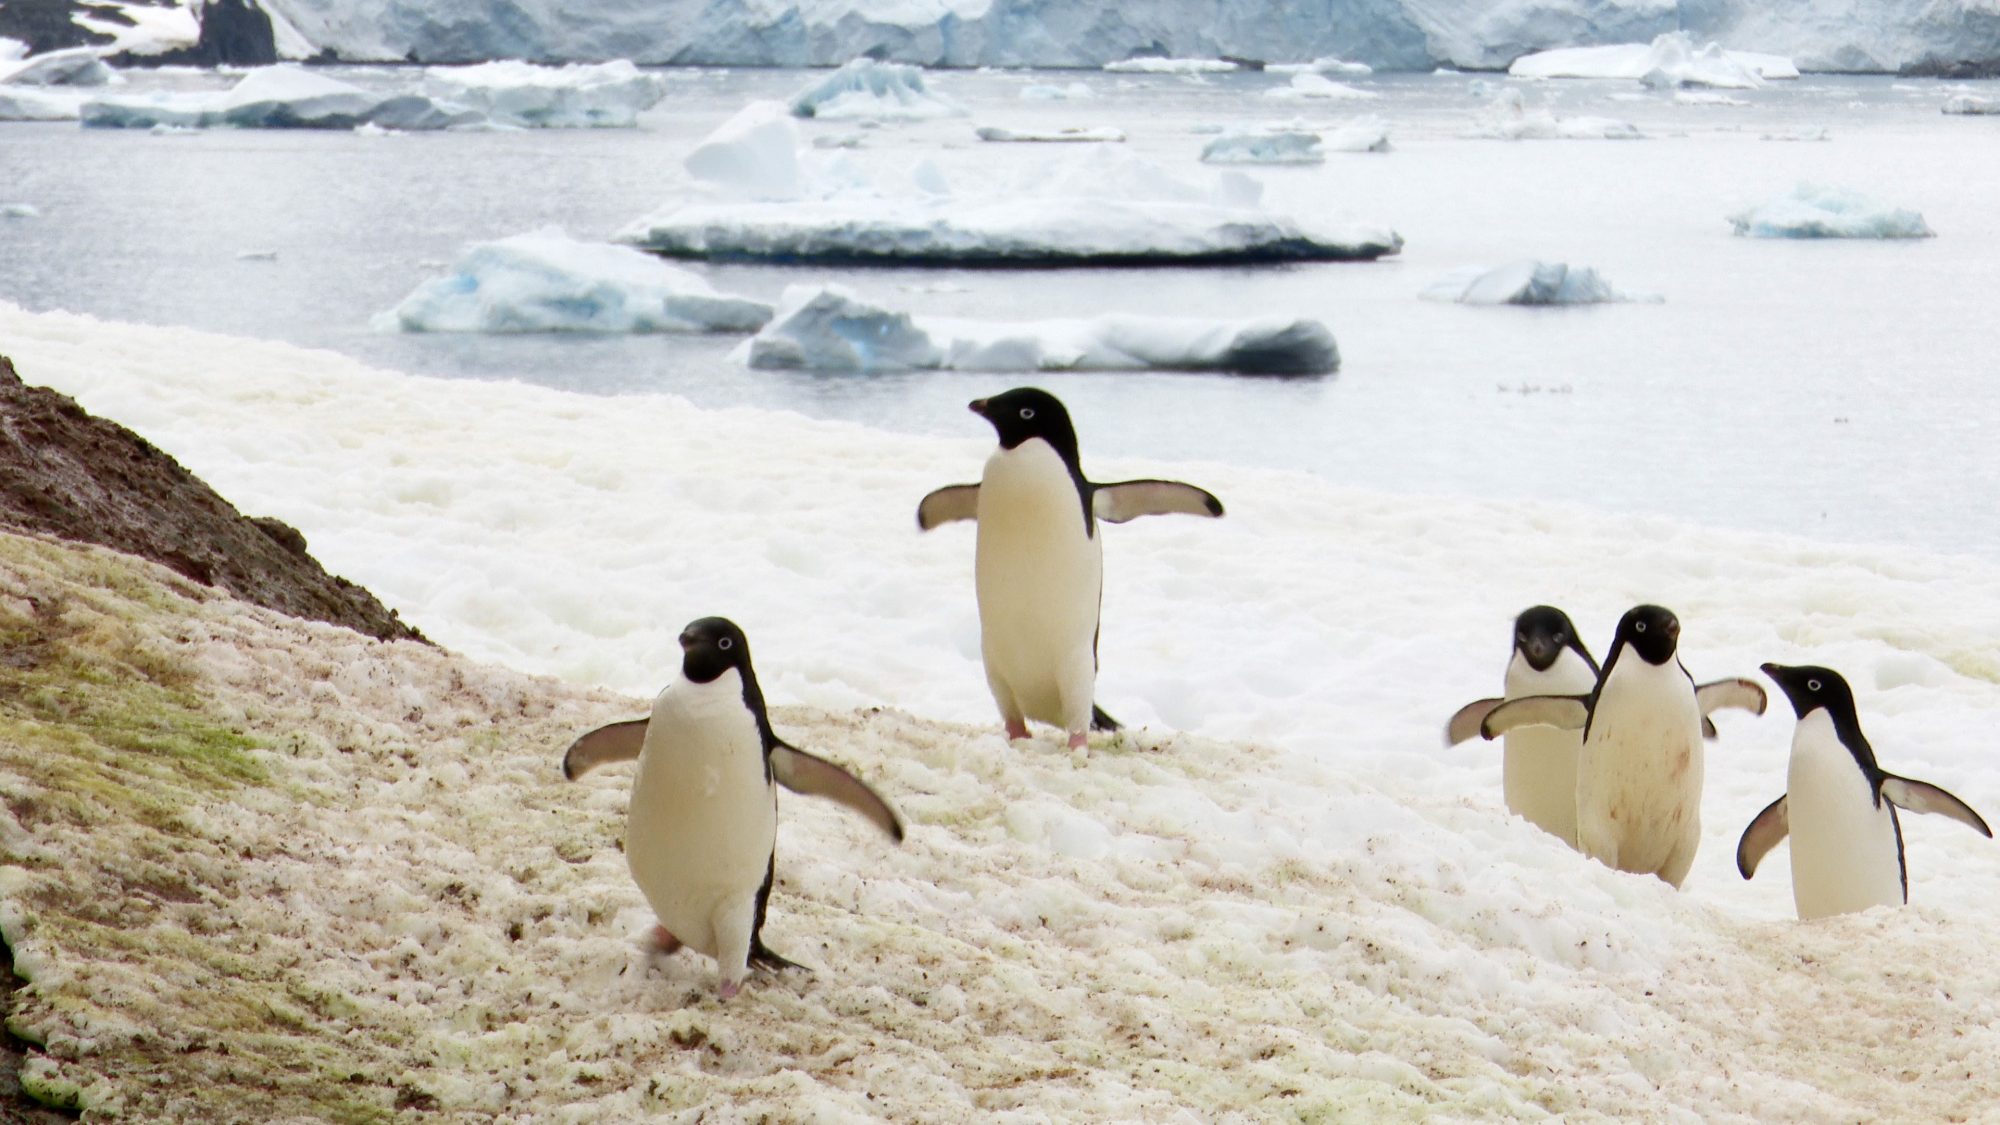 Adelie Penguins in the snow – Antarctica, 2020